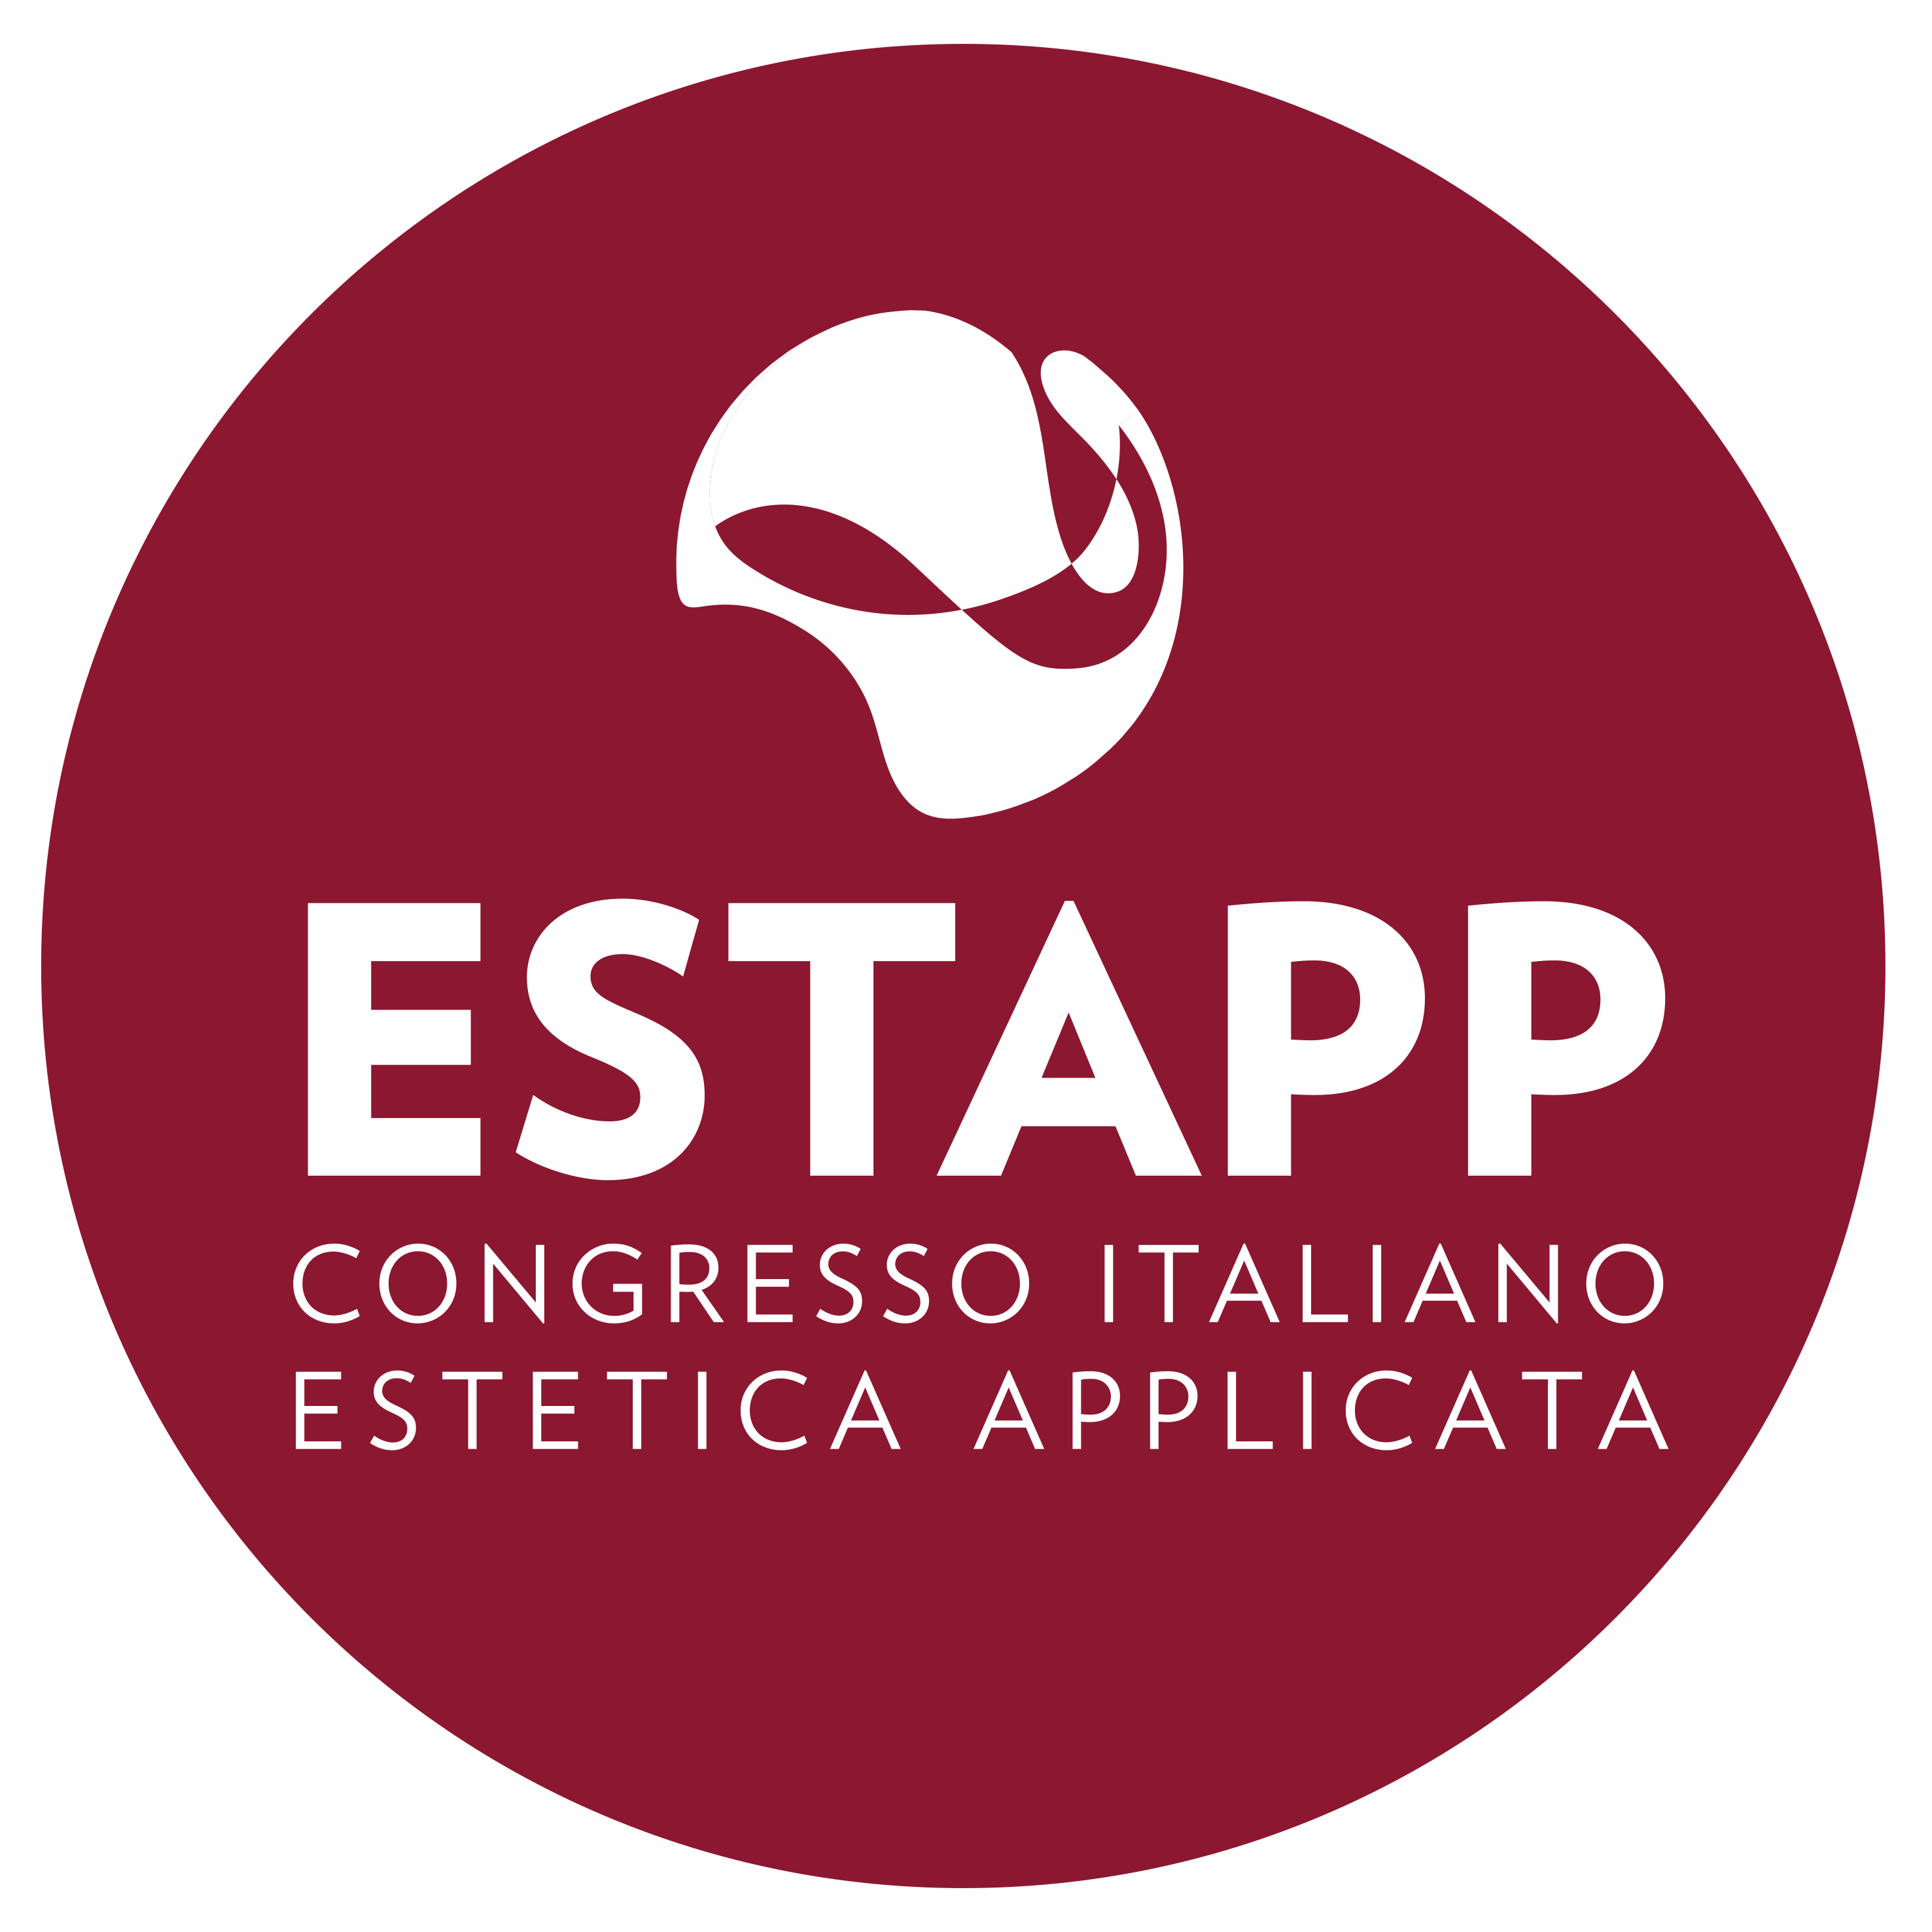 Al momento stai visualizzando Silvia Fossati presenta il Congresso Italiano di Estetica applicata 2018